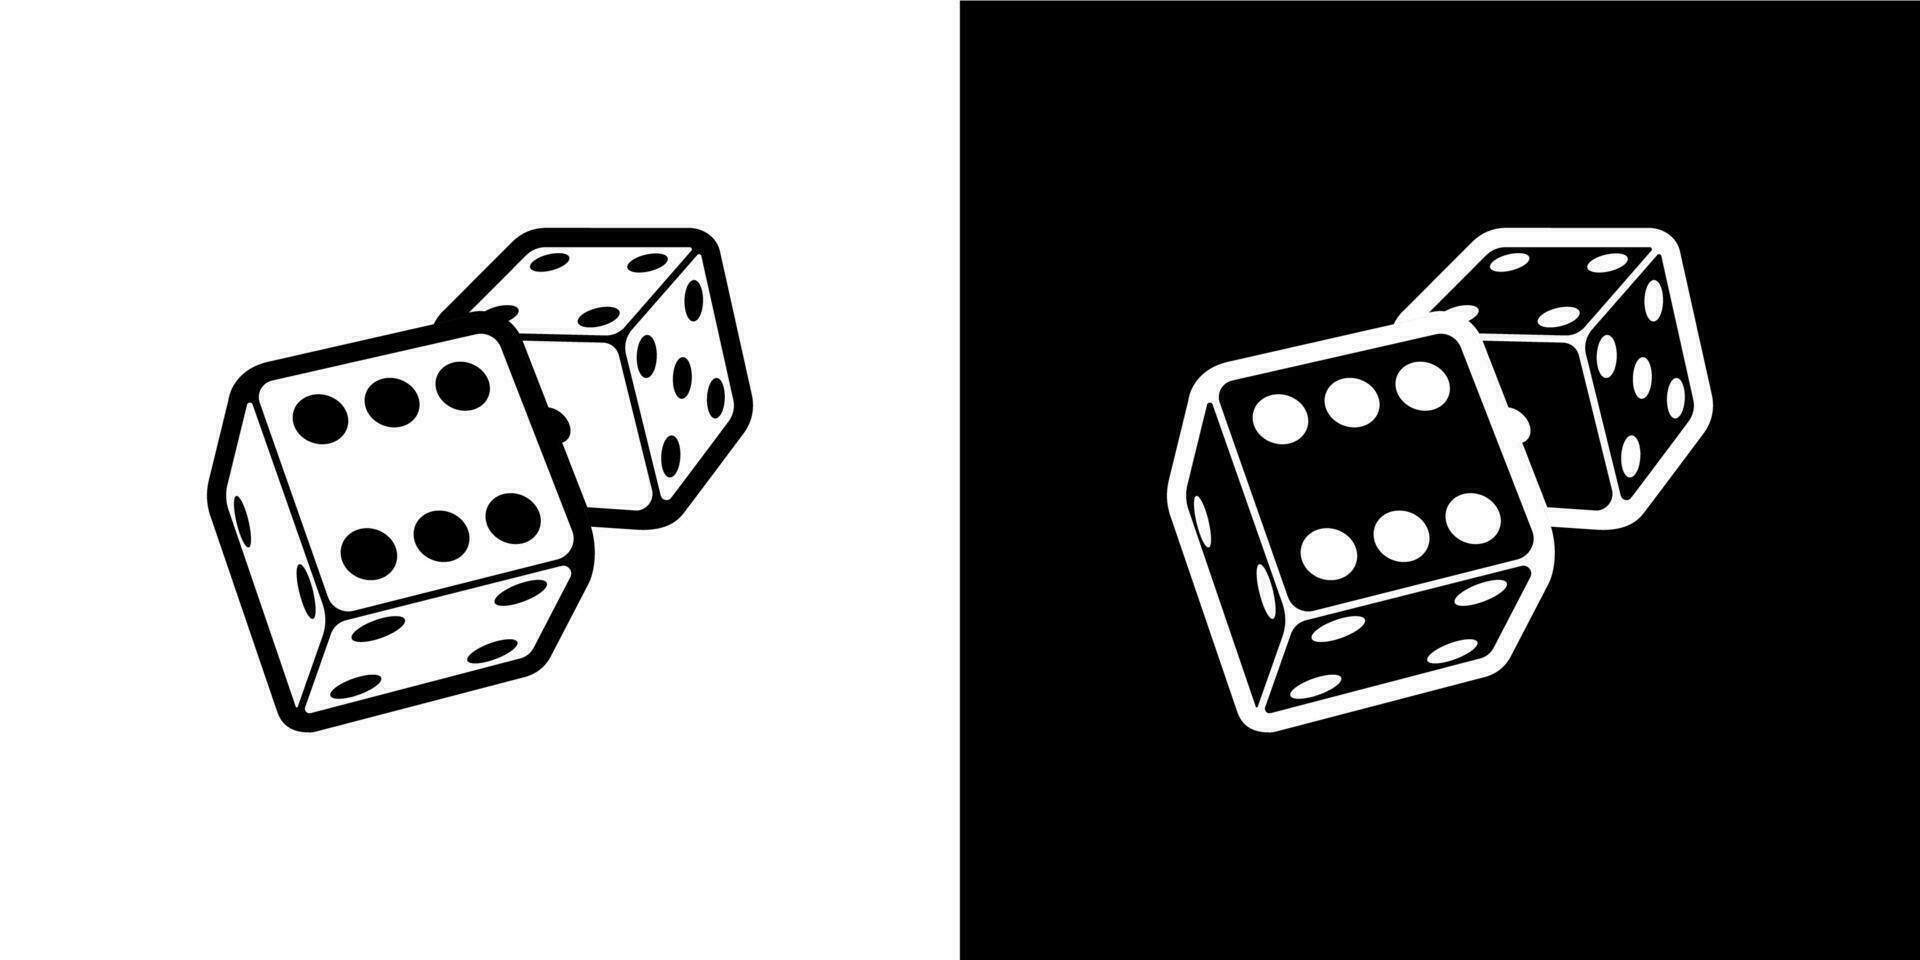 Dobbelsteen logo Aan wit en zwart achtergrond in isometrische stijl voor afdrukken en ontwerp. vector illustratie.